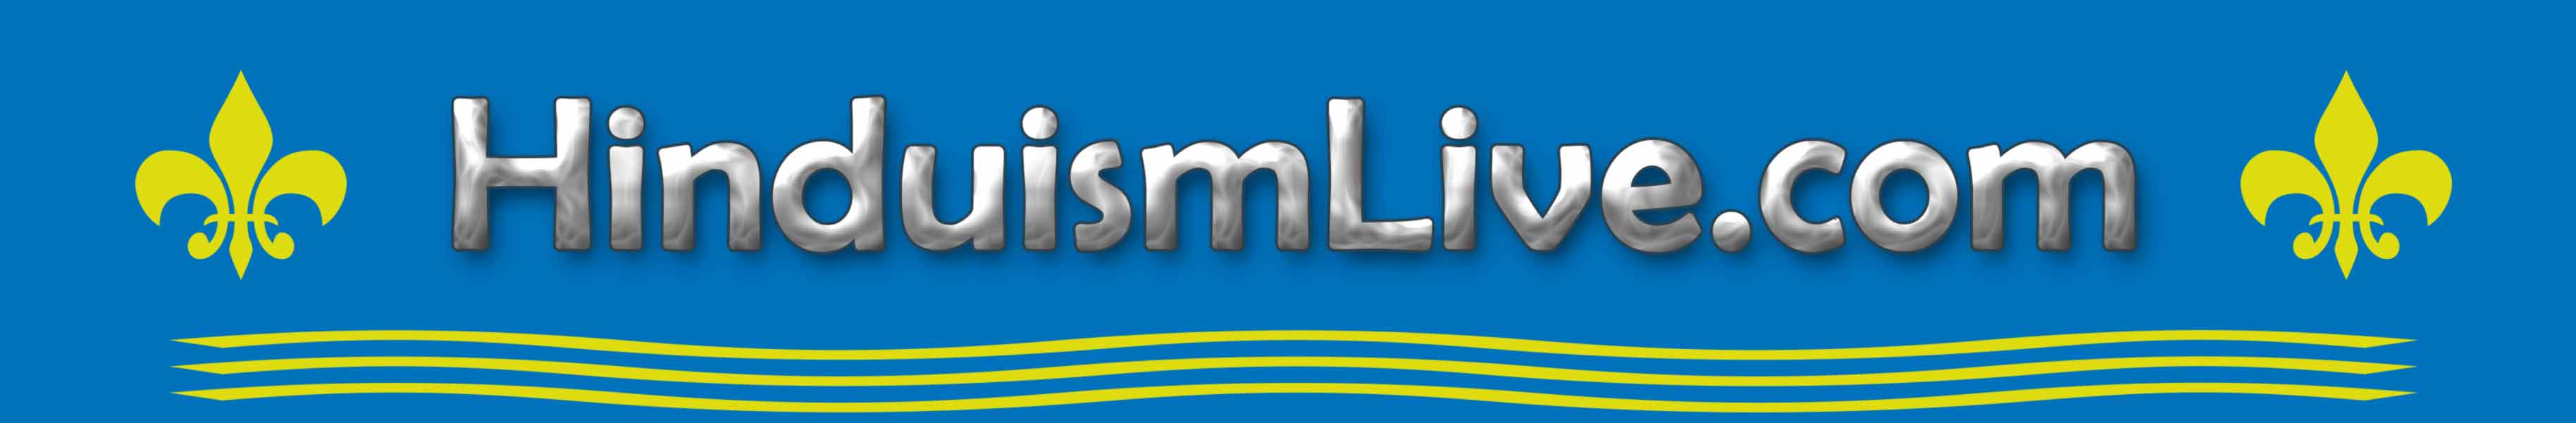 Hinduismlive.com header logo